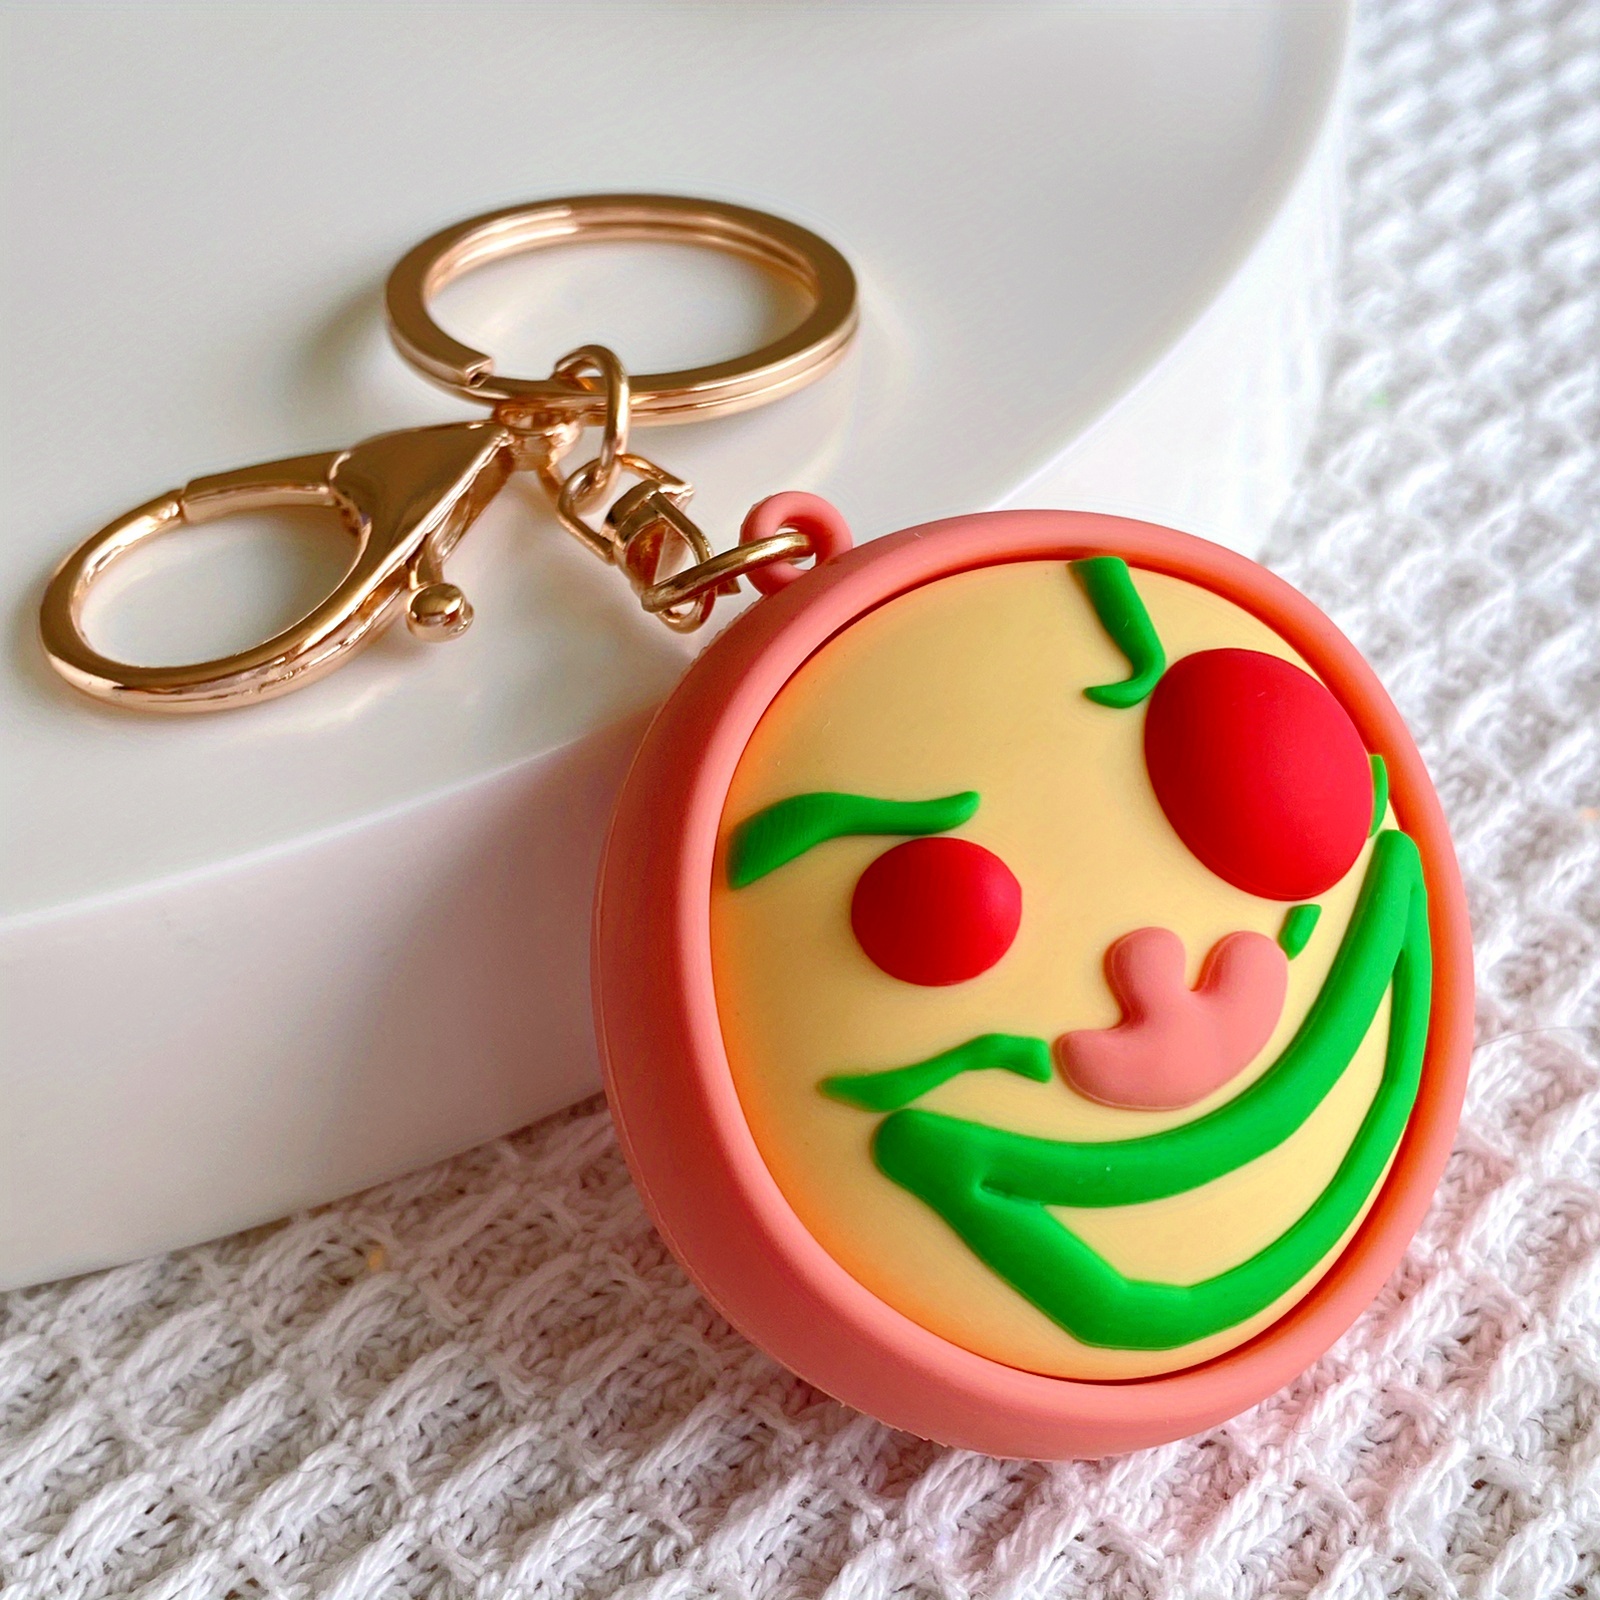 Smiley Face Emoji Keychain / Mirror